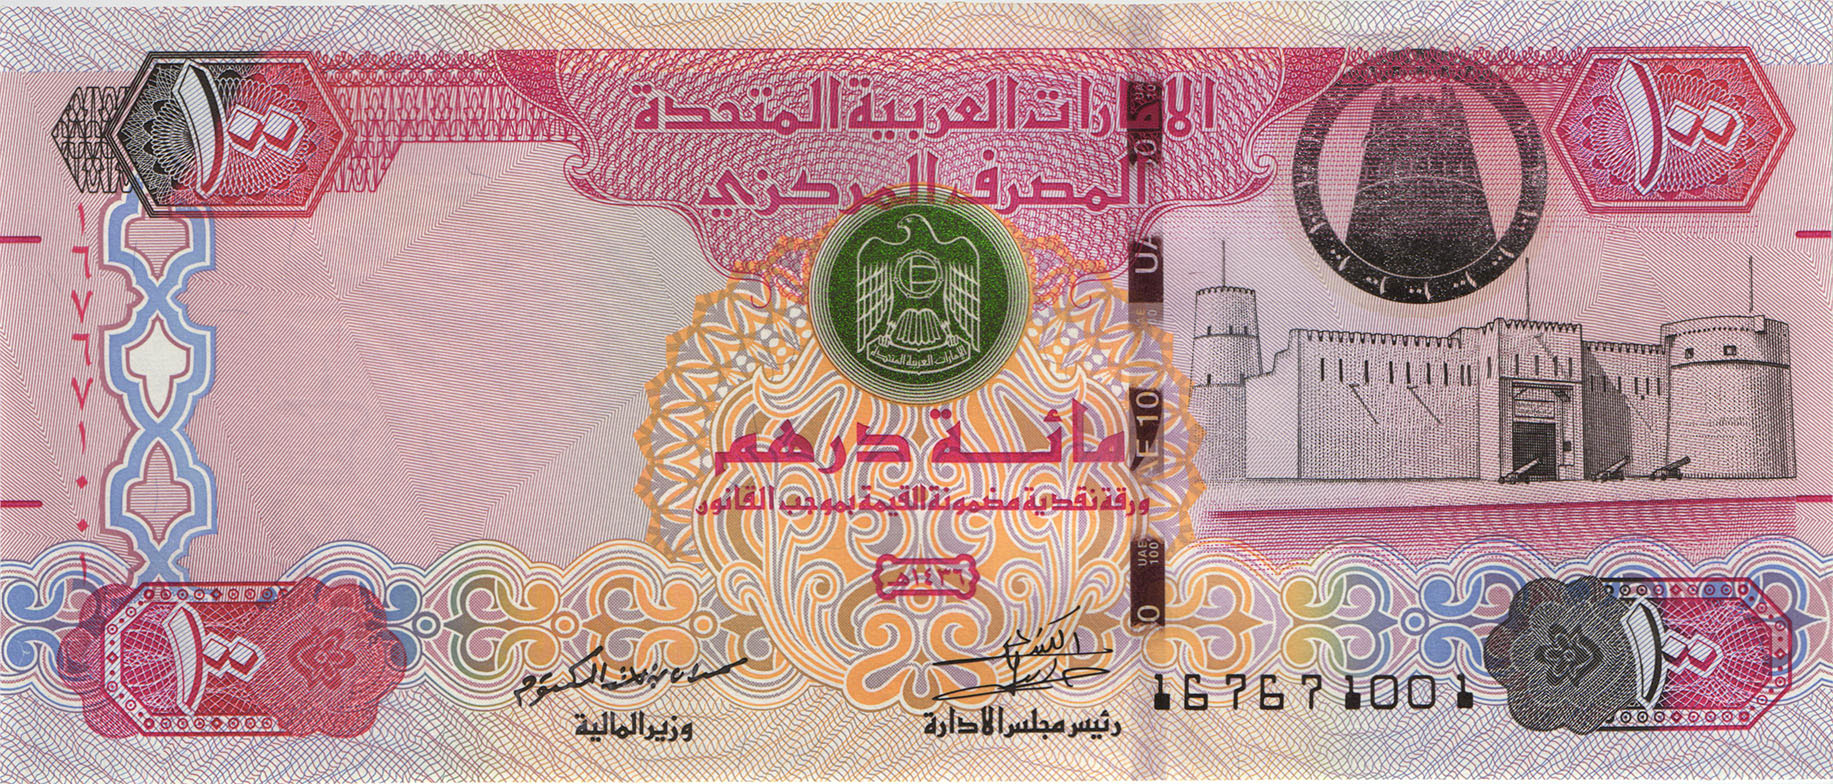 Купить дирхамы в нижнем новгороде. Банкноты United arab Emirates,2008, 50 dirhams. 100 Дирхам ОАЭ. Дирхам ОАЭ бонны. Монета Объединённых арабских Эмиратов 100.